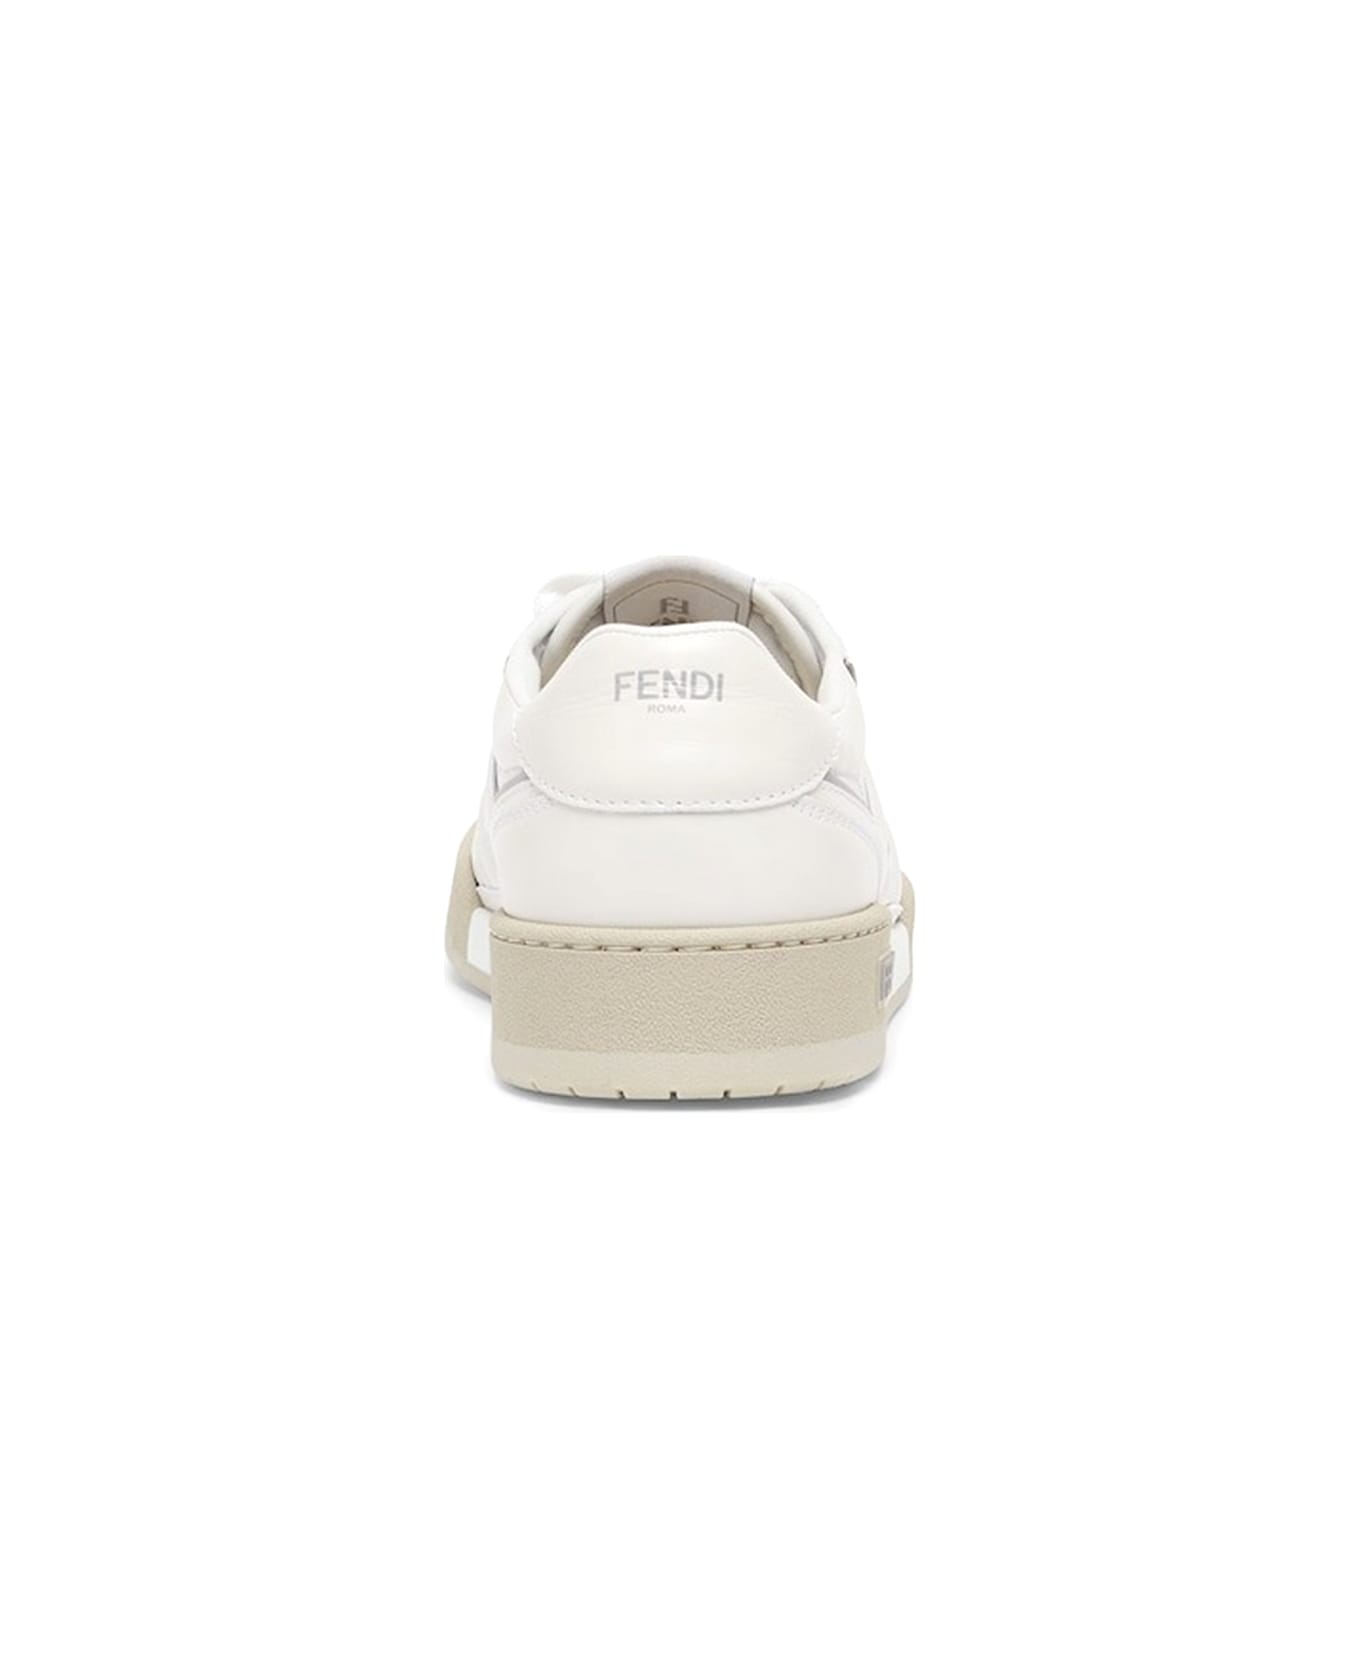 Fendi Low Top Sneaker In White Leather - BIANCO GRGIO CHIARO